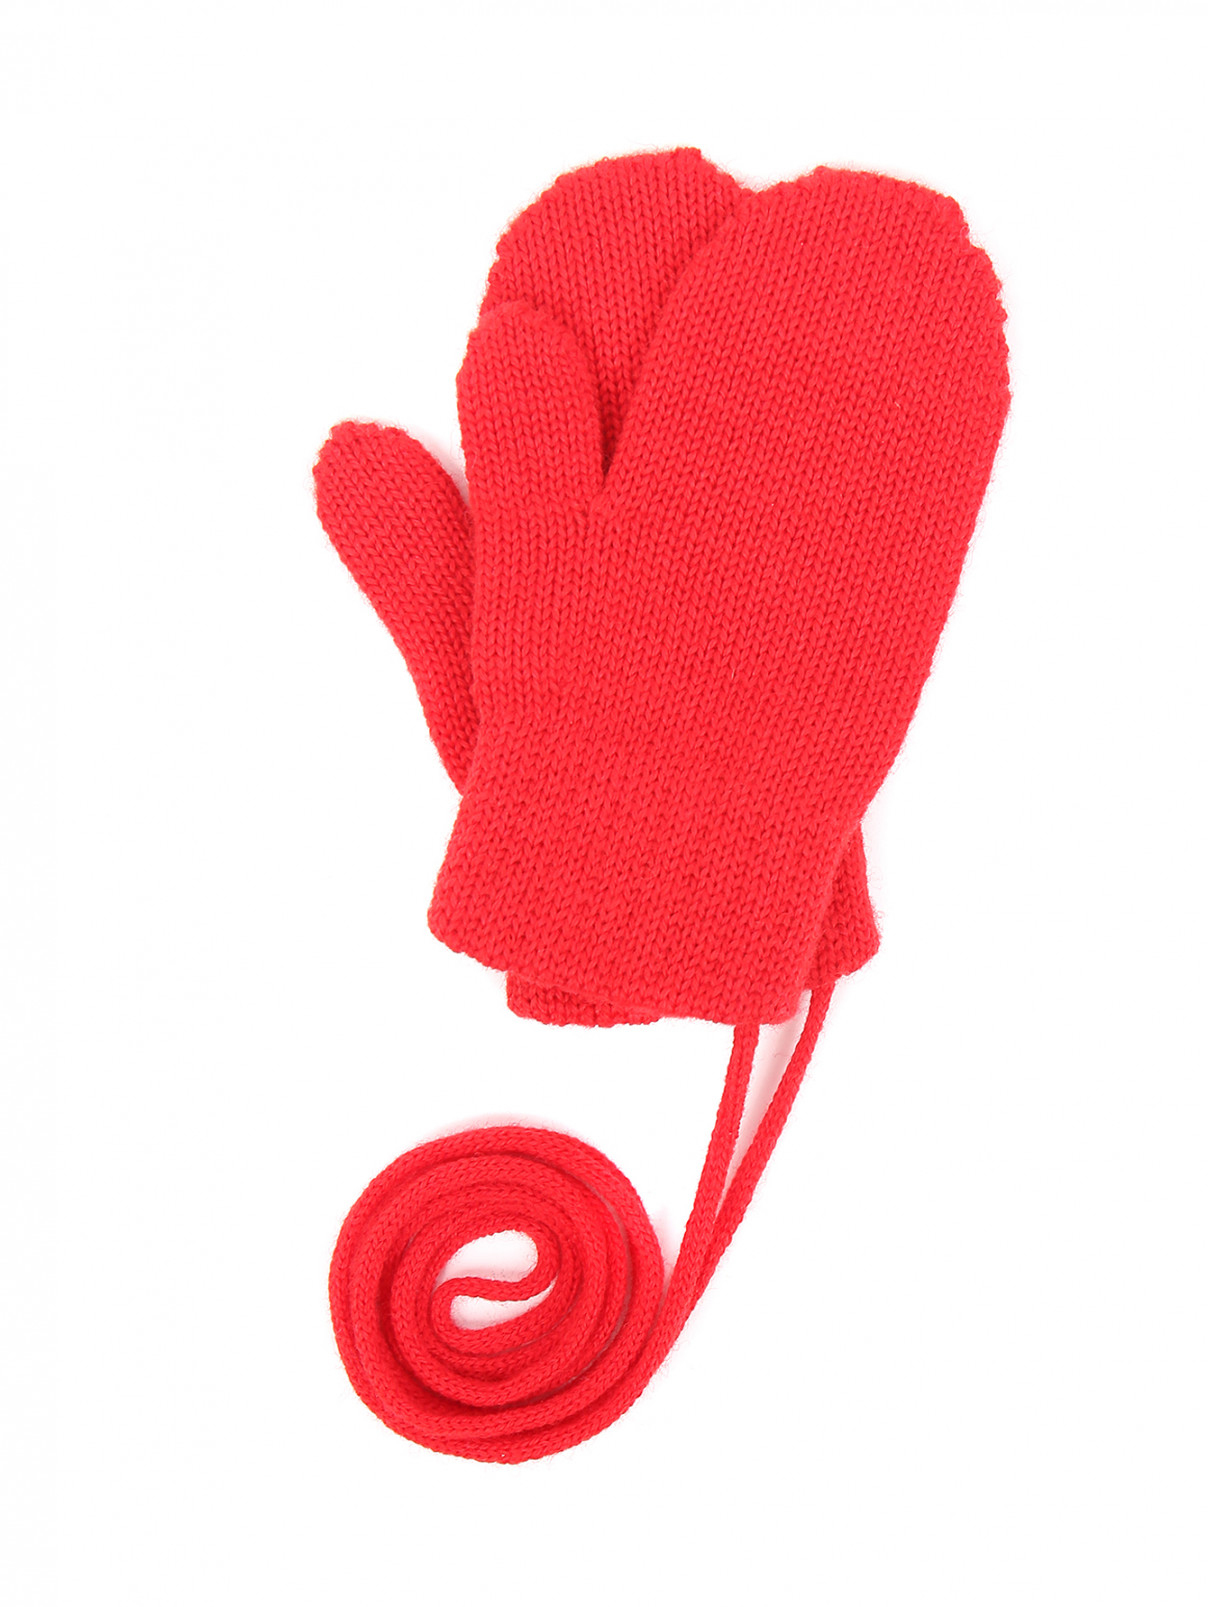 Варежки трикотажные из шерсти на резинке Catya  –  Общий вид  – Цвет:  Красный